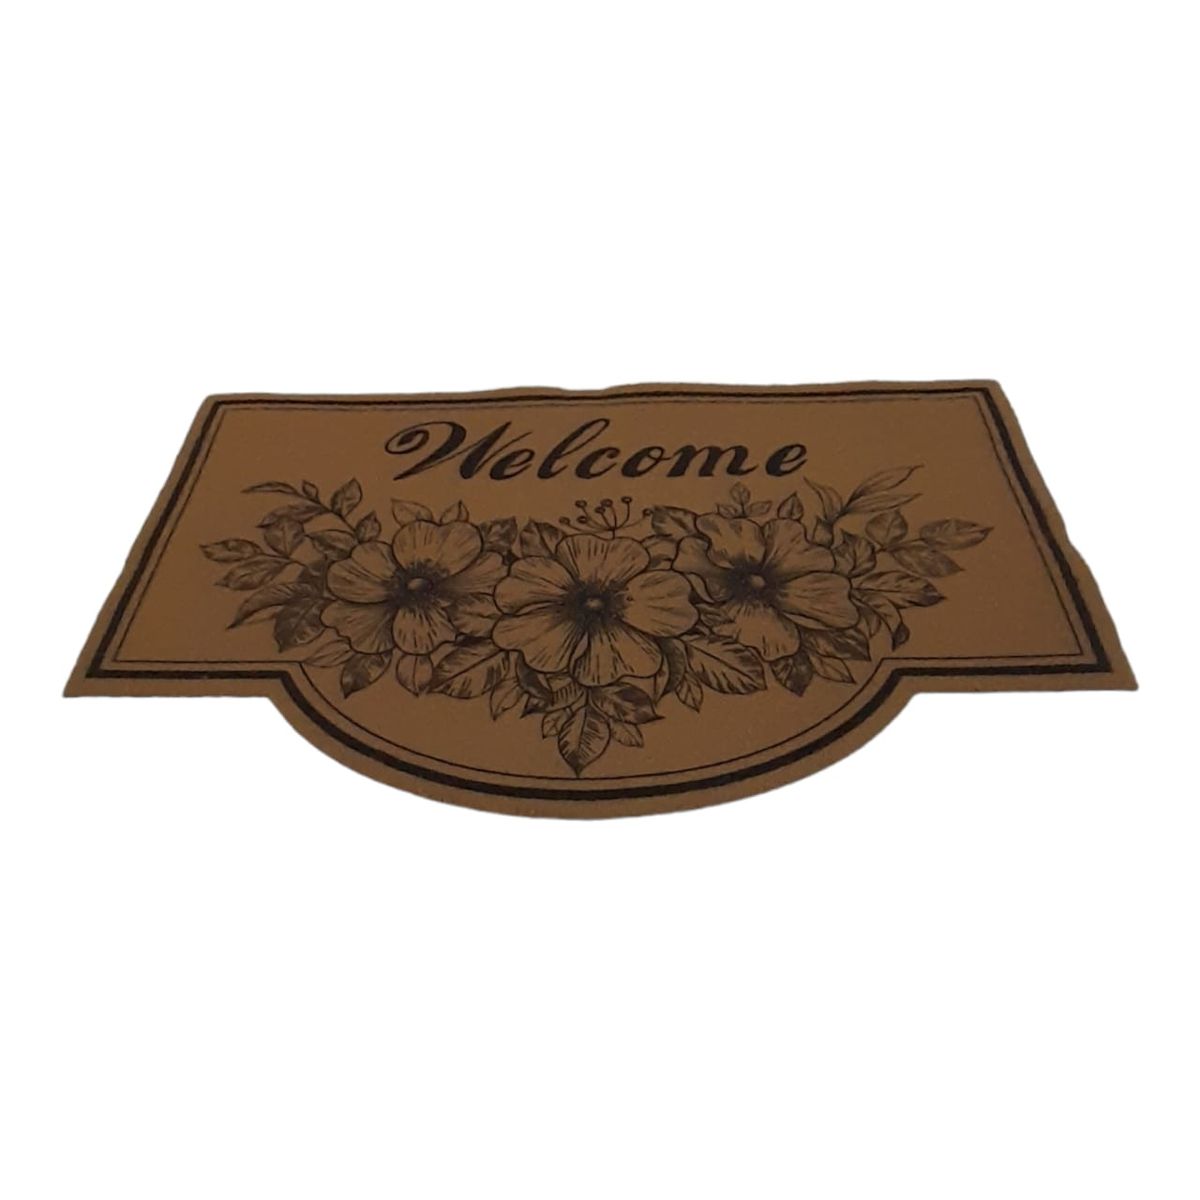 Welcome Outdoor Doormat- Brown - Flower